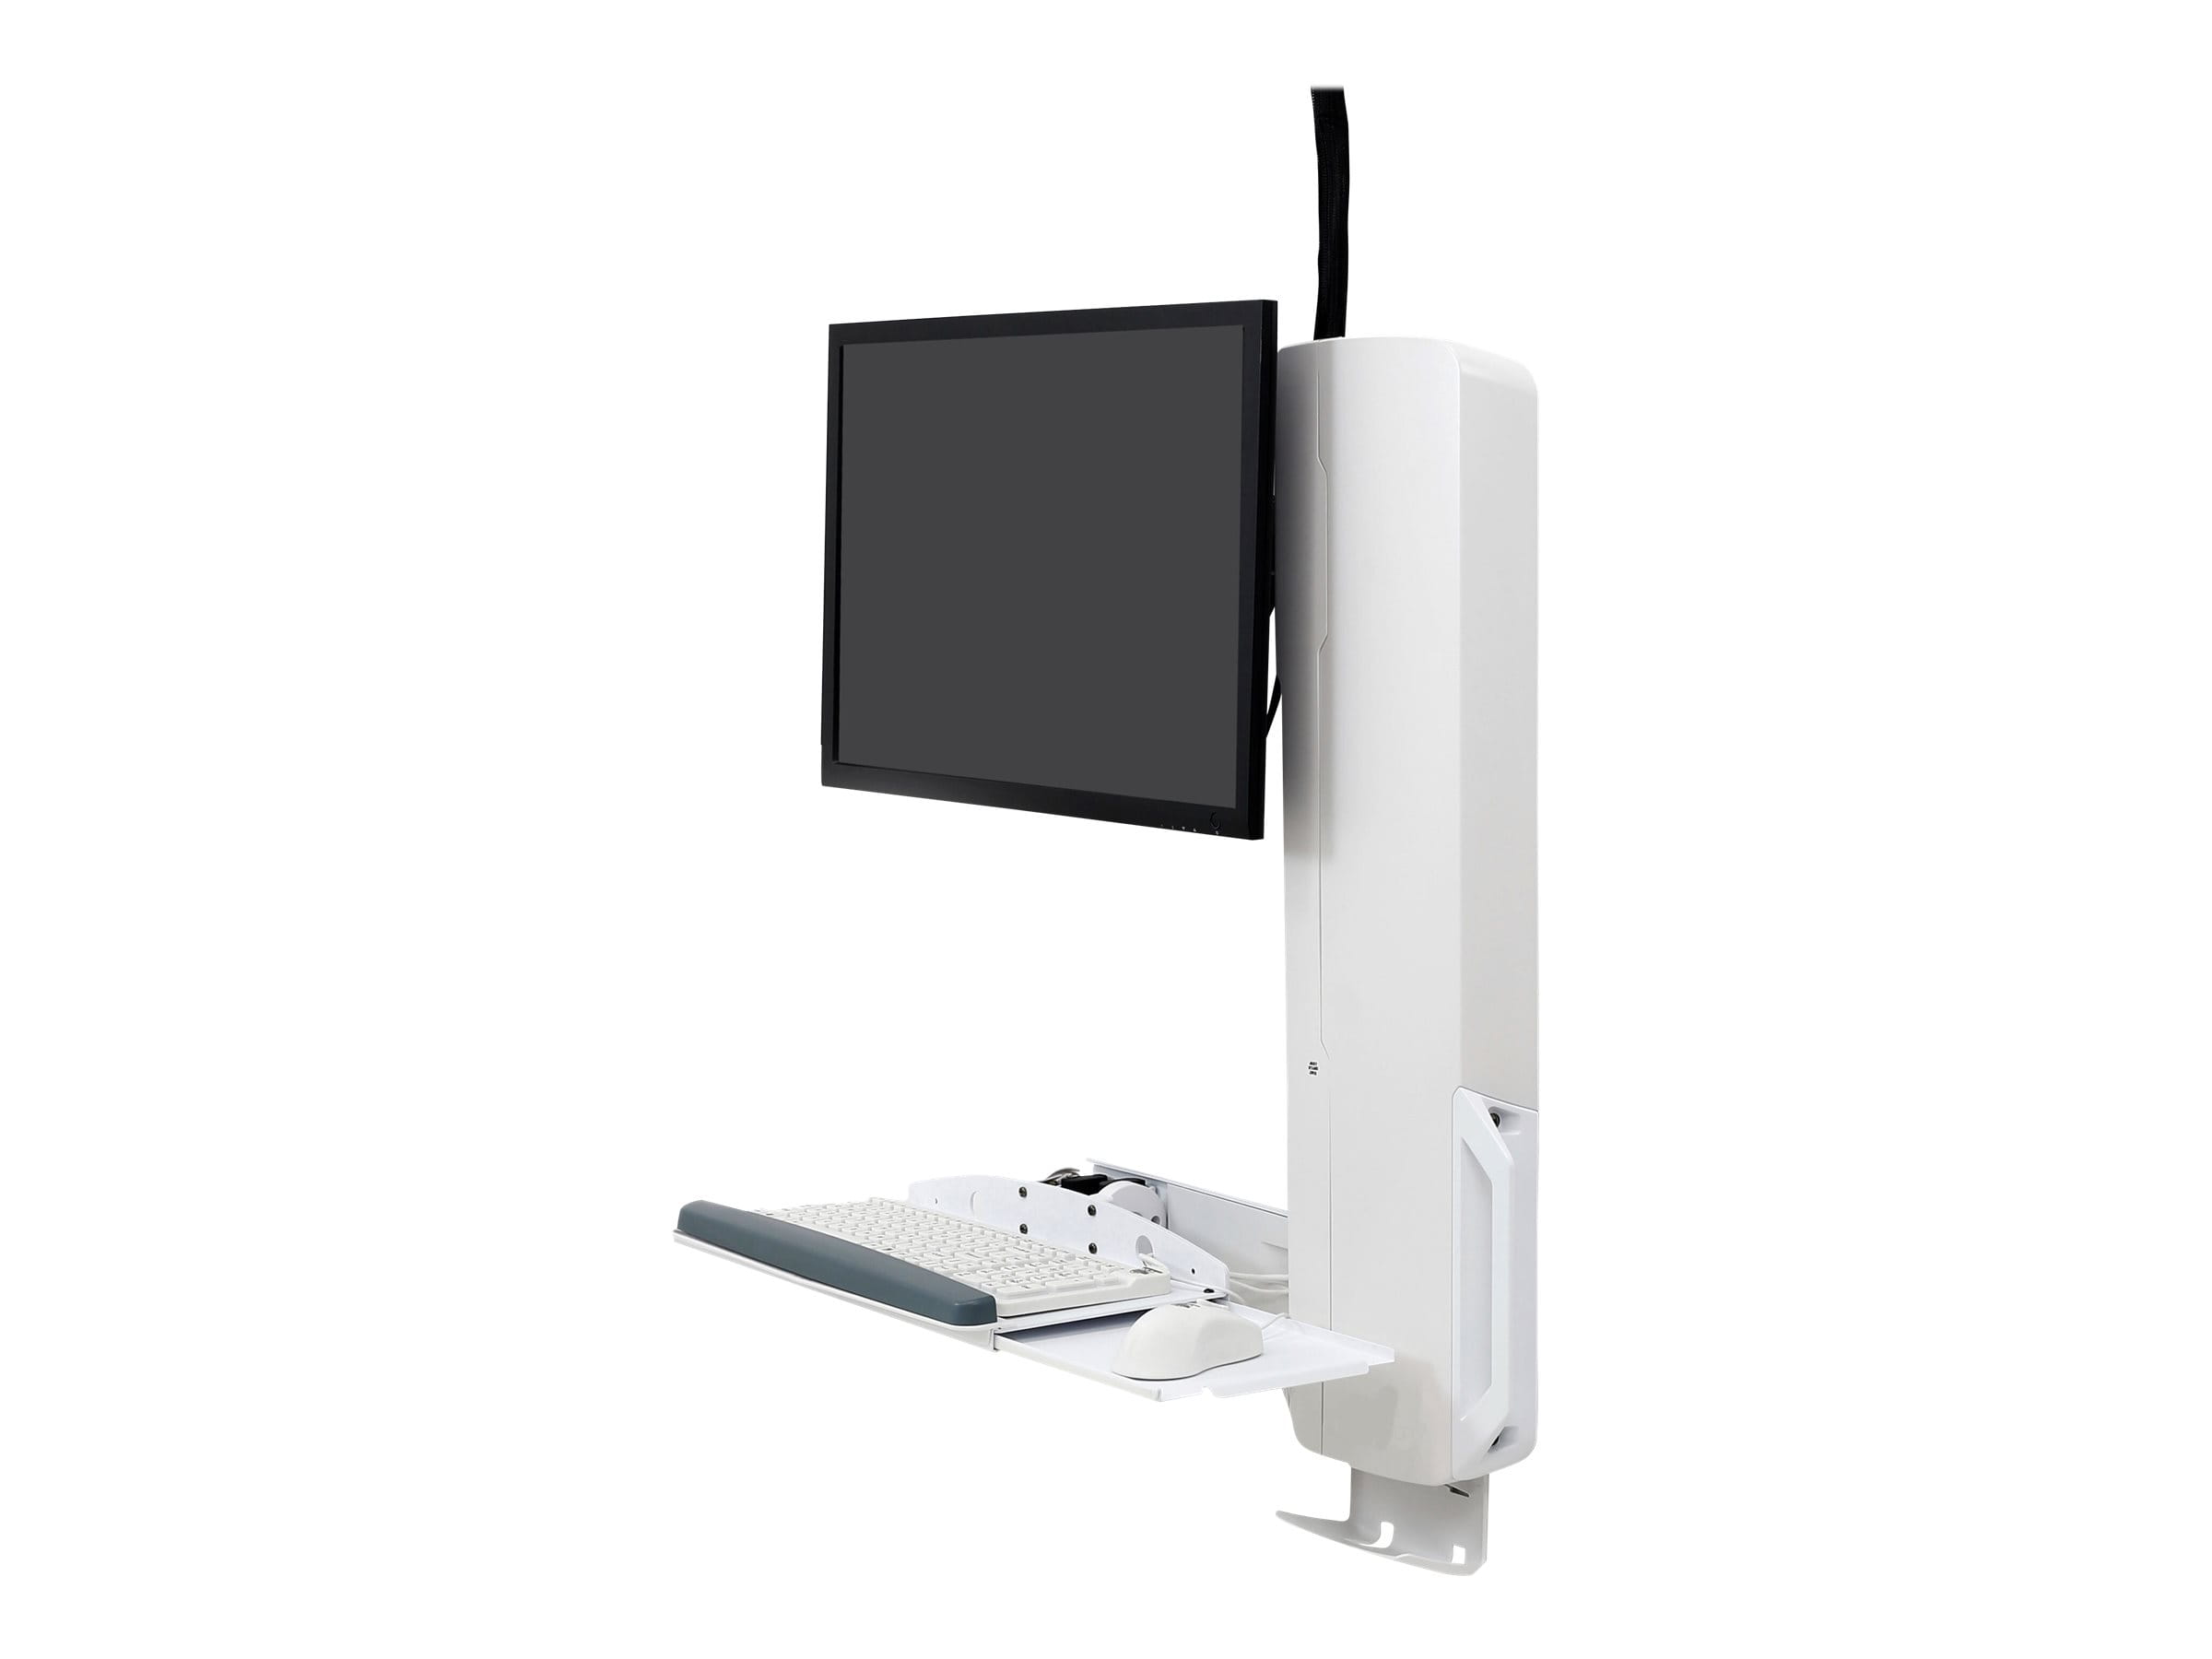 Ergotron Befestigungskit (vertikaler Hub) - für LCD-Display / PC-Ausrüstung - Steh-Sitz-Sysetm - weiß - Bildschirmgröße: bis zu 61 cm (bis zu 24 Zoll)